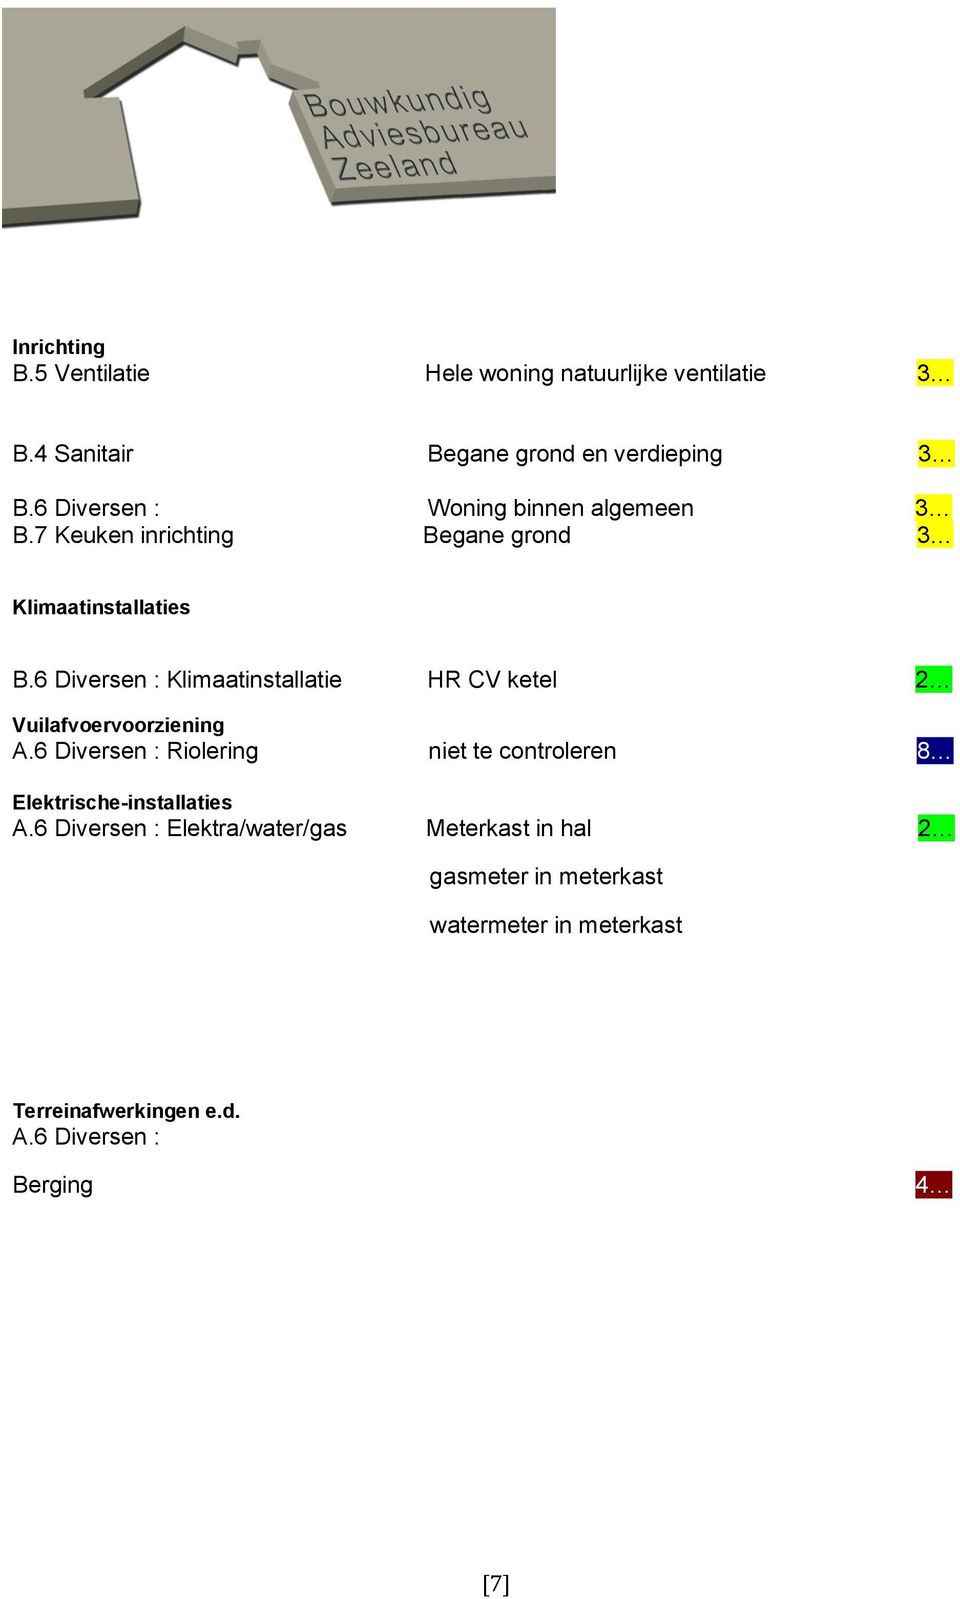 6 Diversen : Klimaatinstallatie HR CV ketel 2 9 Vuilafvoervoorziening A.